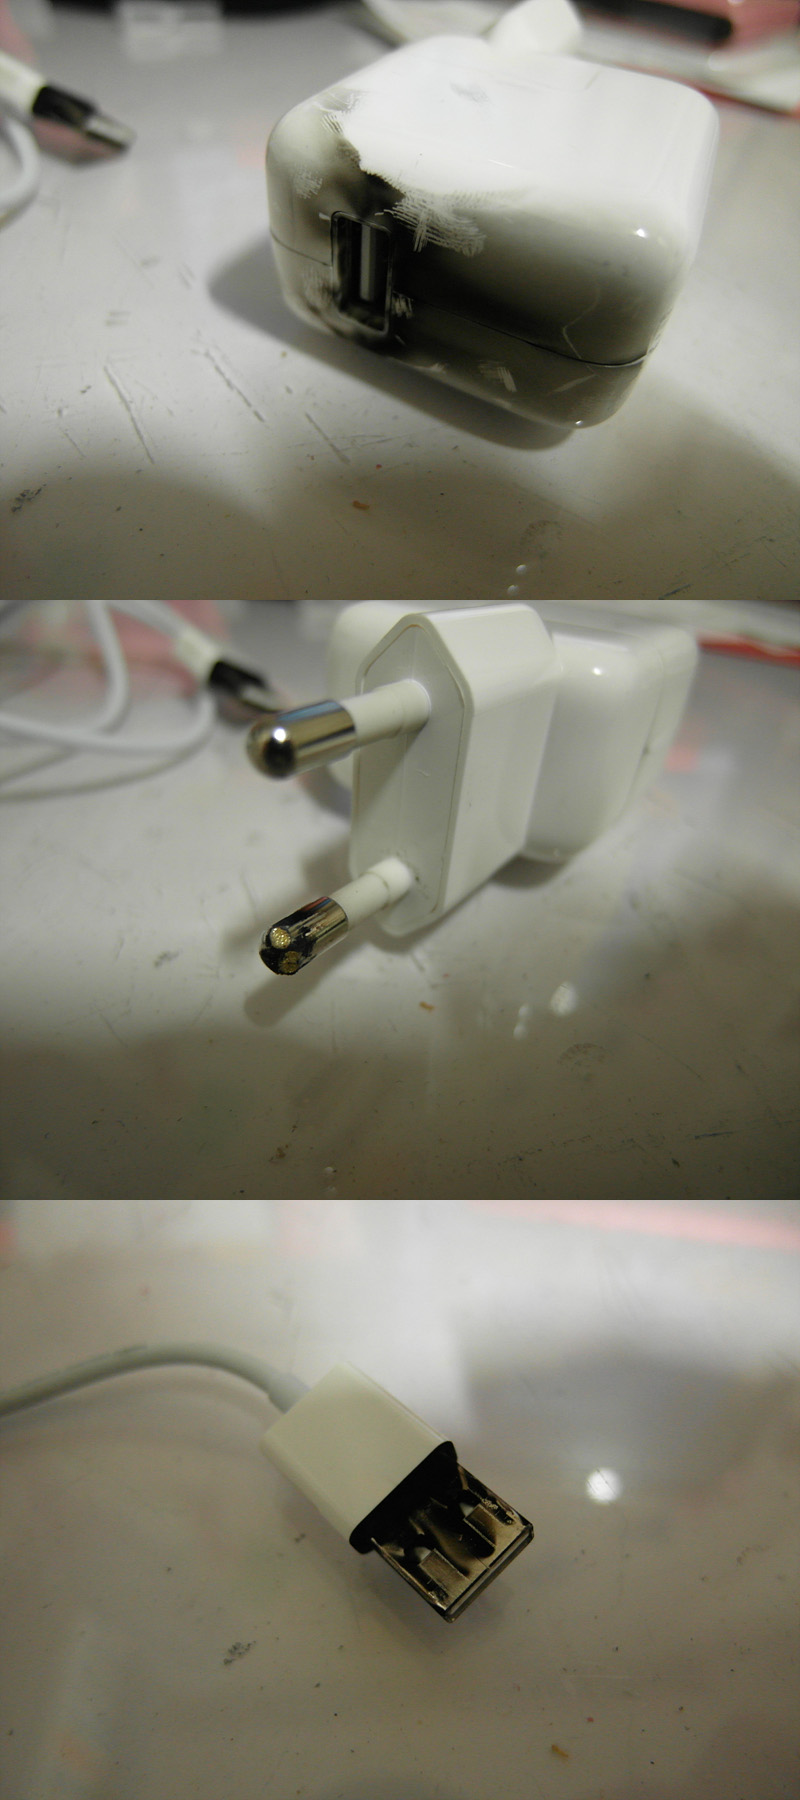 아이폰4 사용자 안모씨가 18일 인터넷에 공개한 아이폰4 충전기 폭발사진